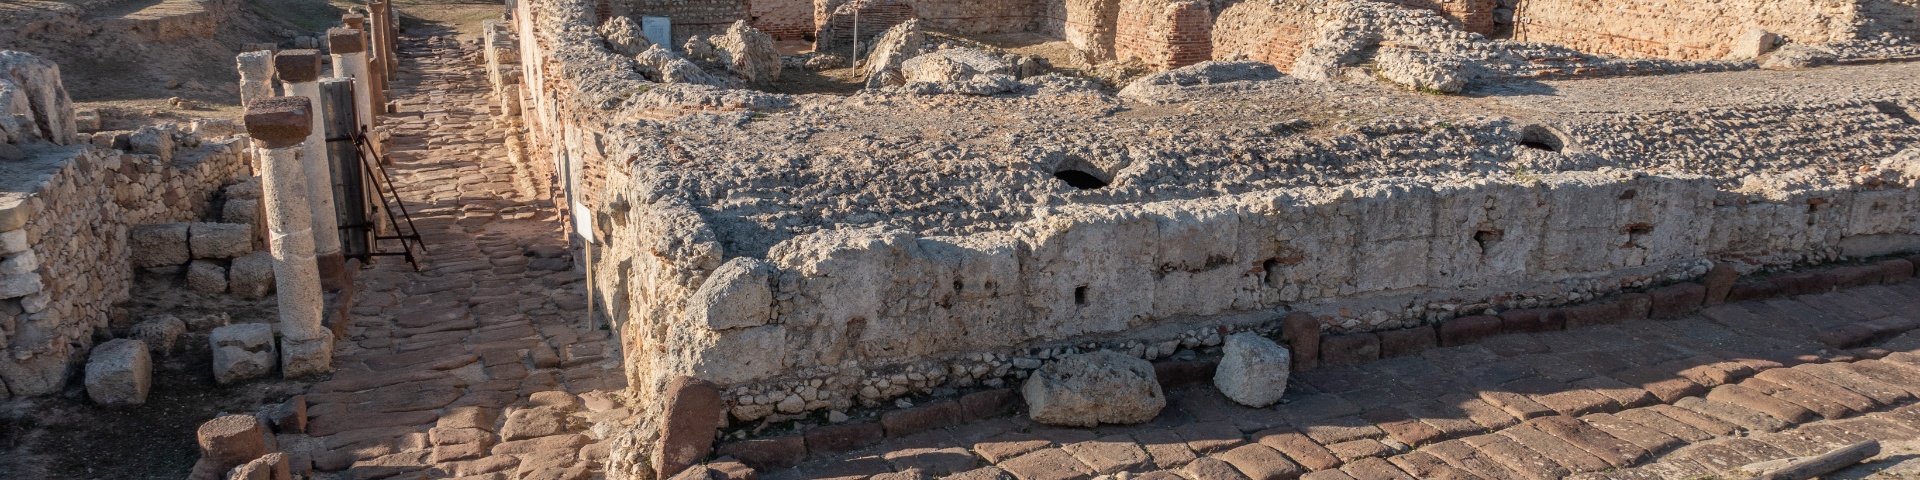 Antiquarium Turritano e area archeologica di Turris Libisonis